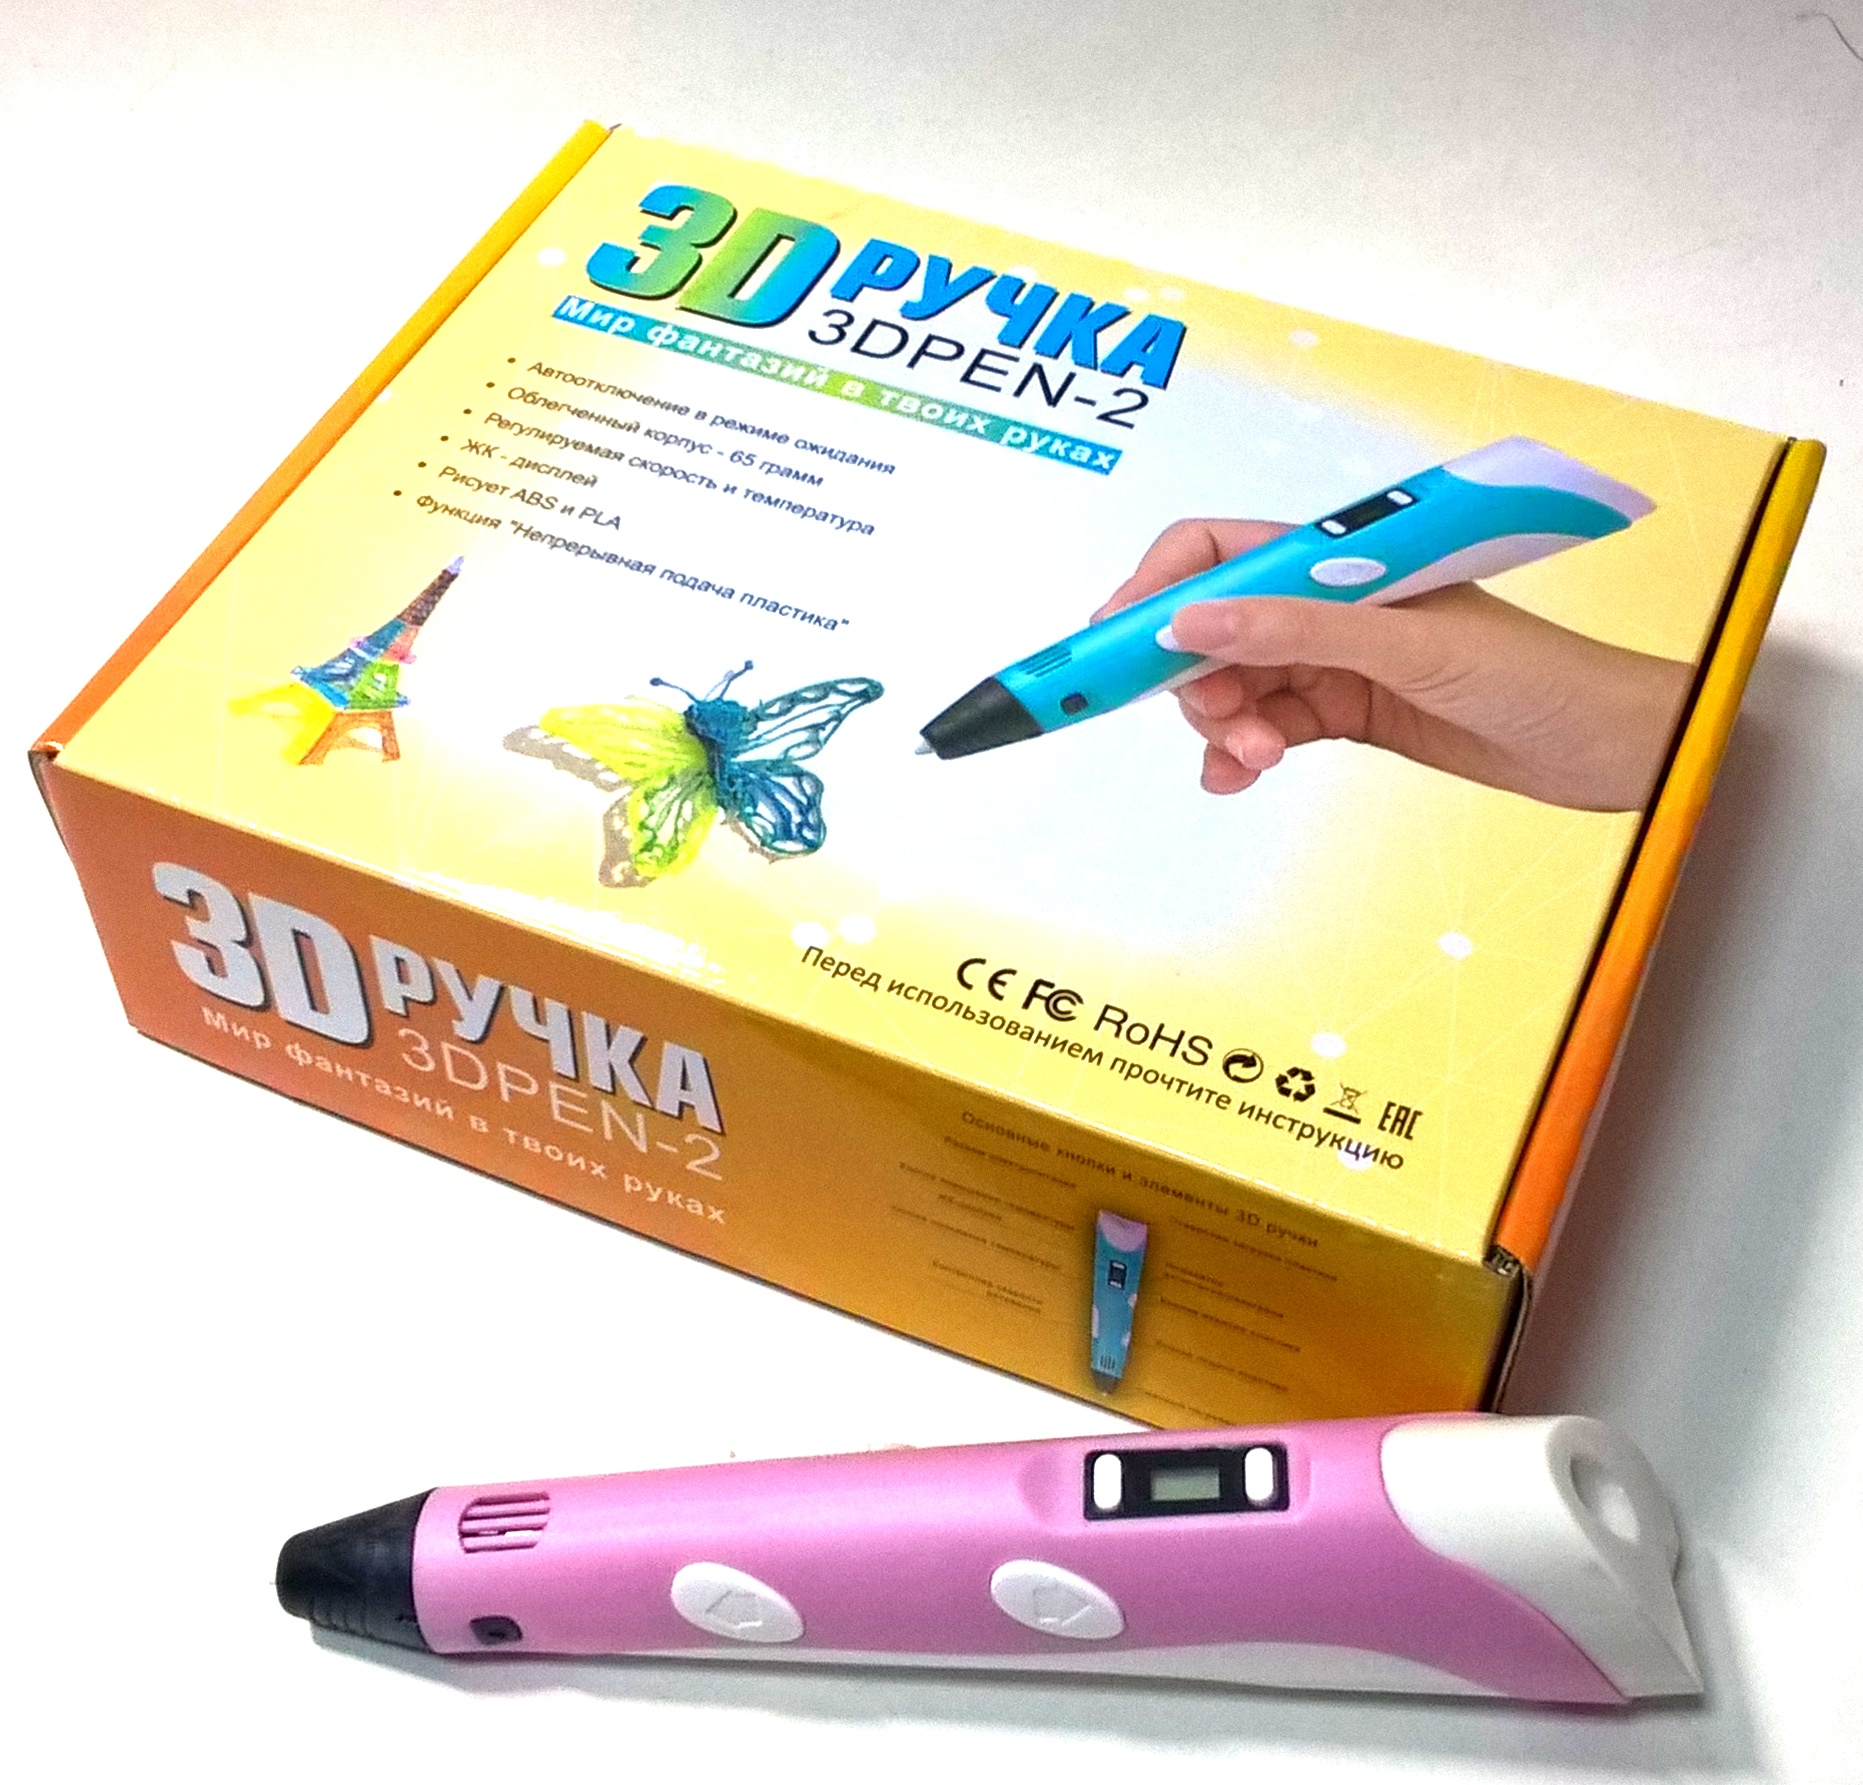 Ручка 3D Pen-2 встроенный дисплей, регулировка температуры,  